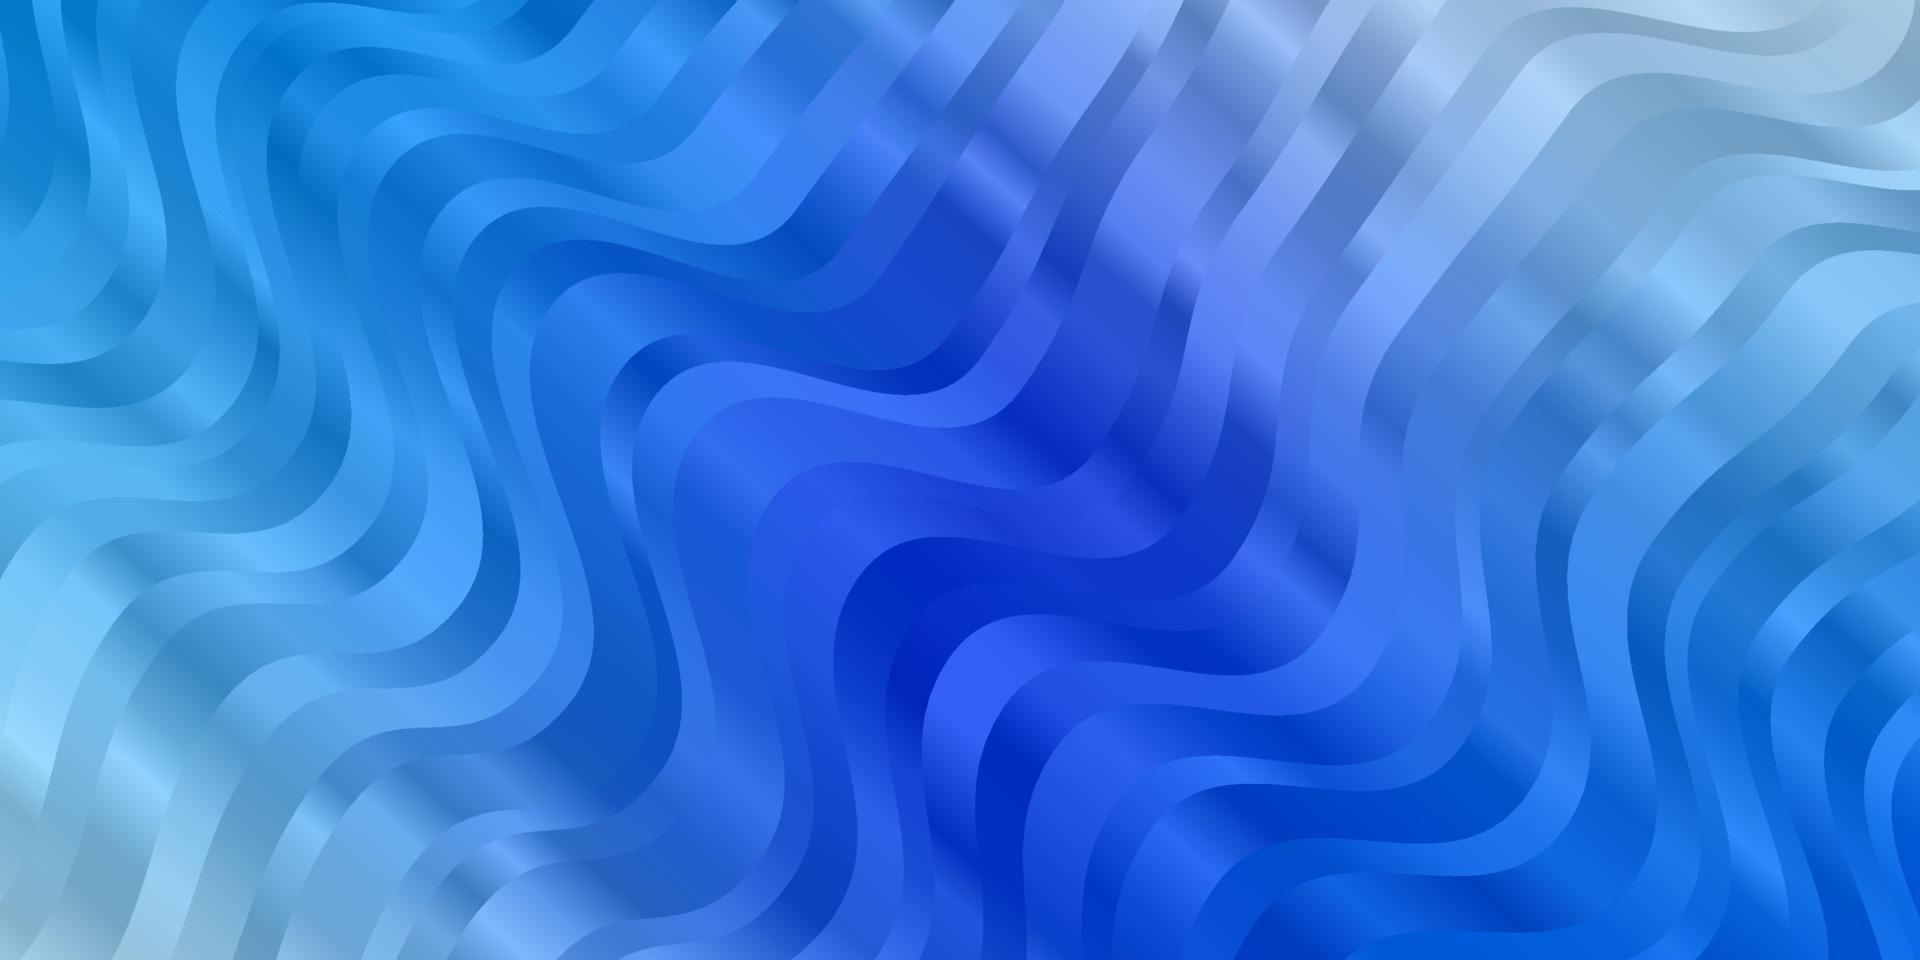 plantilla de vector azul claro con curvas.